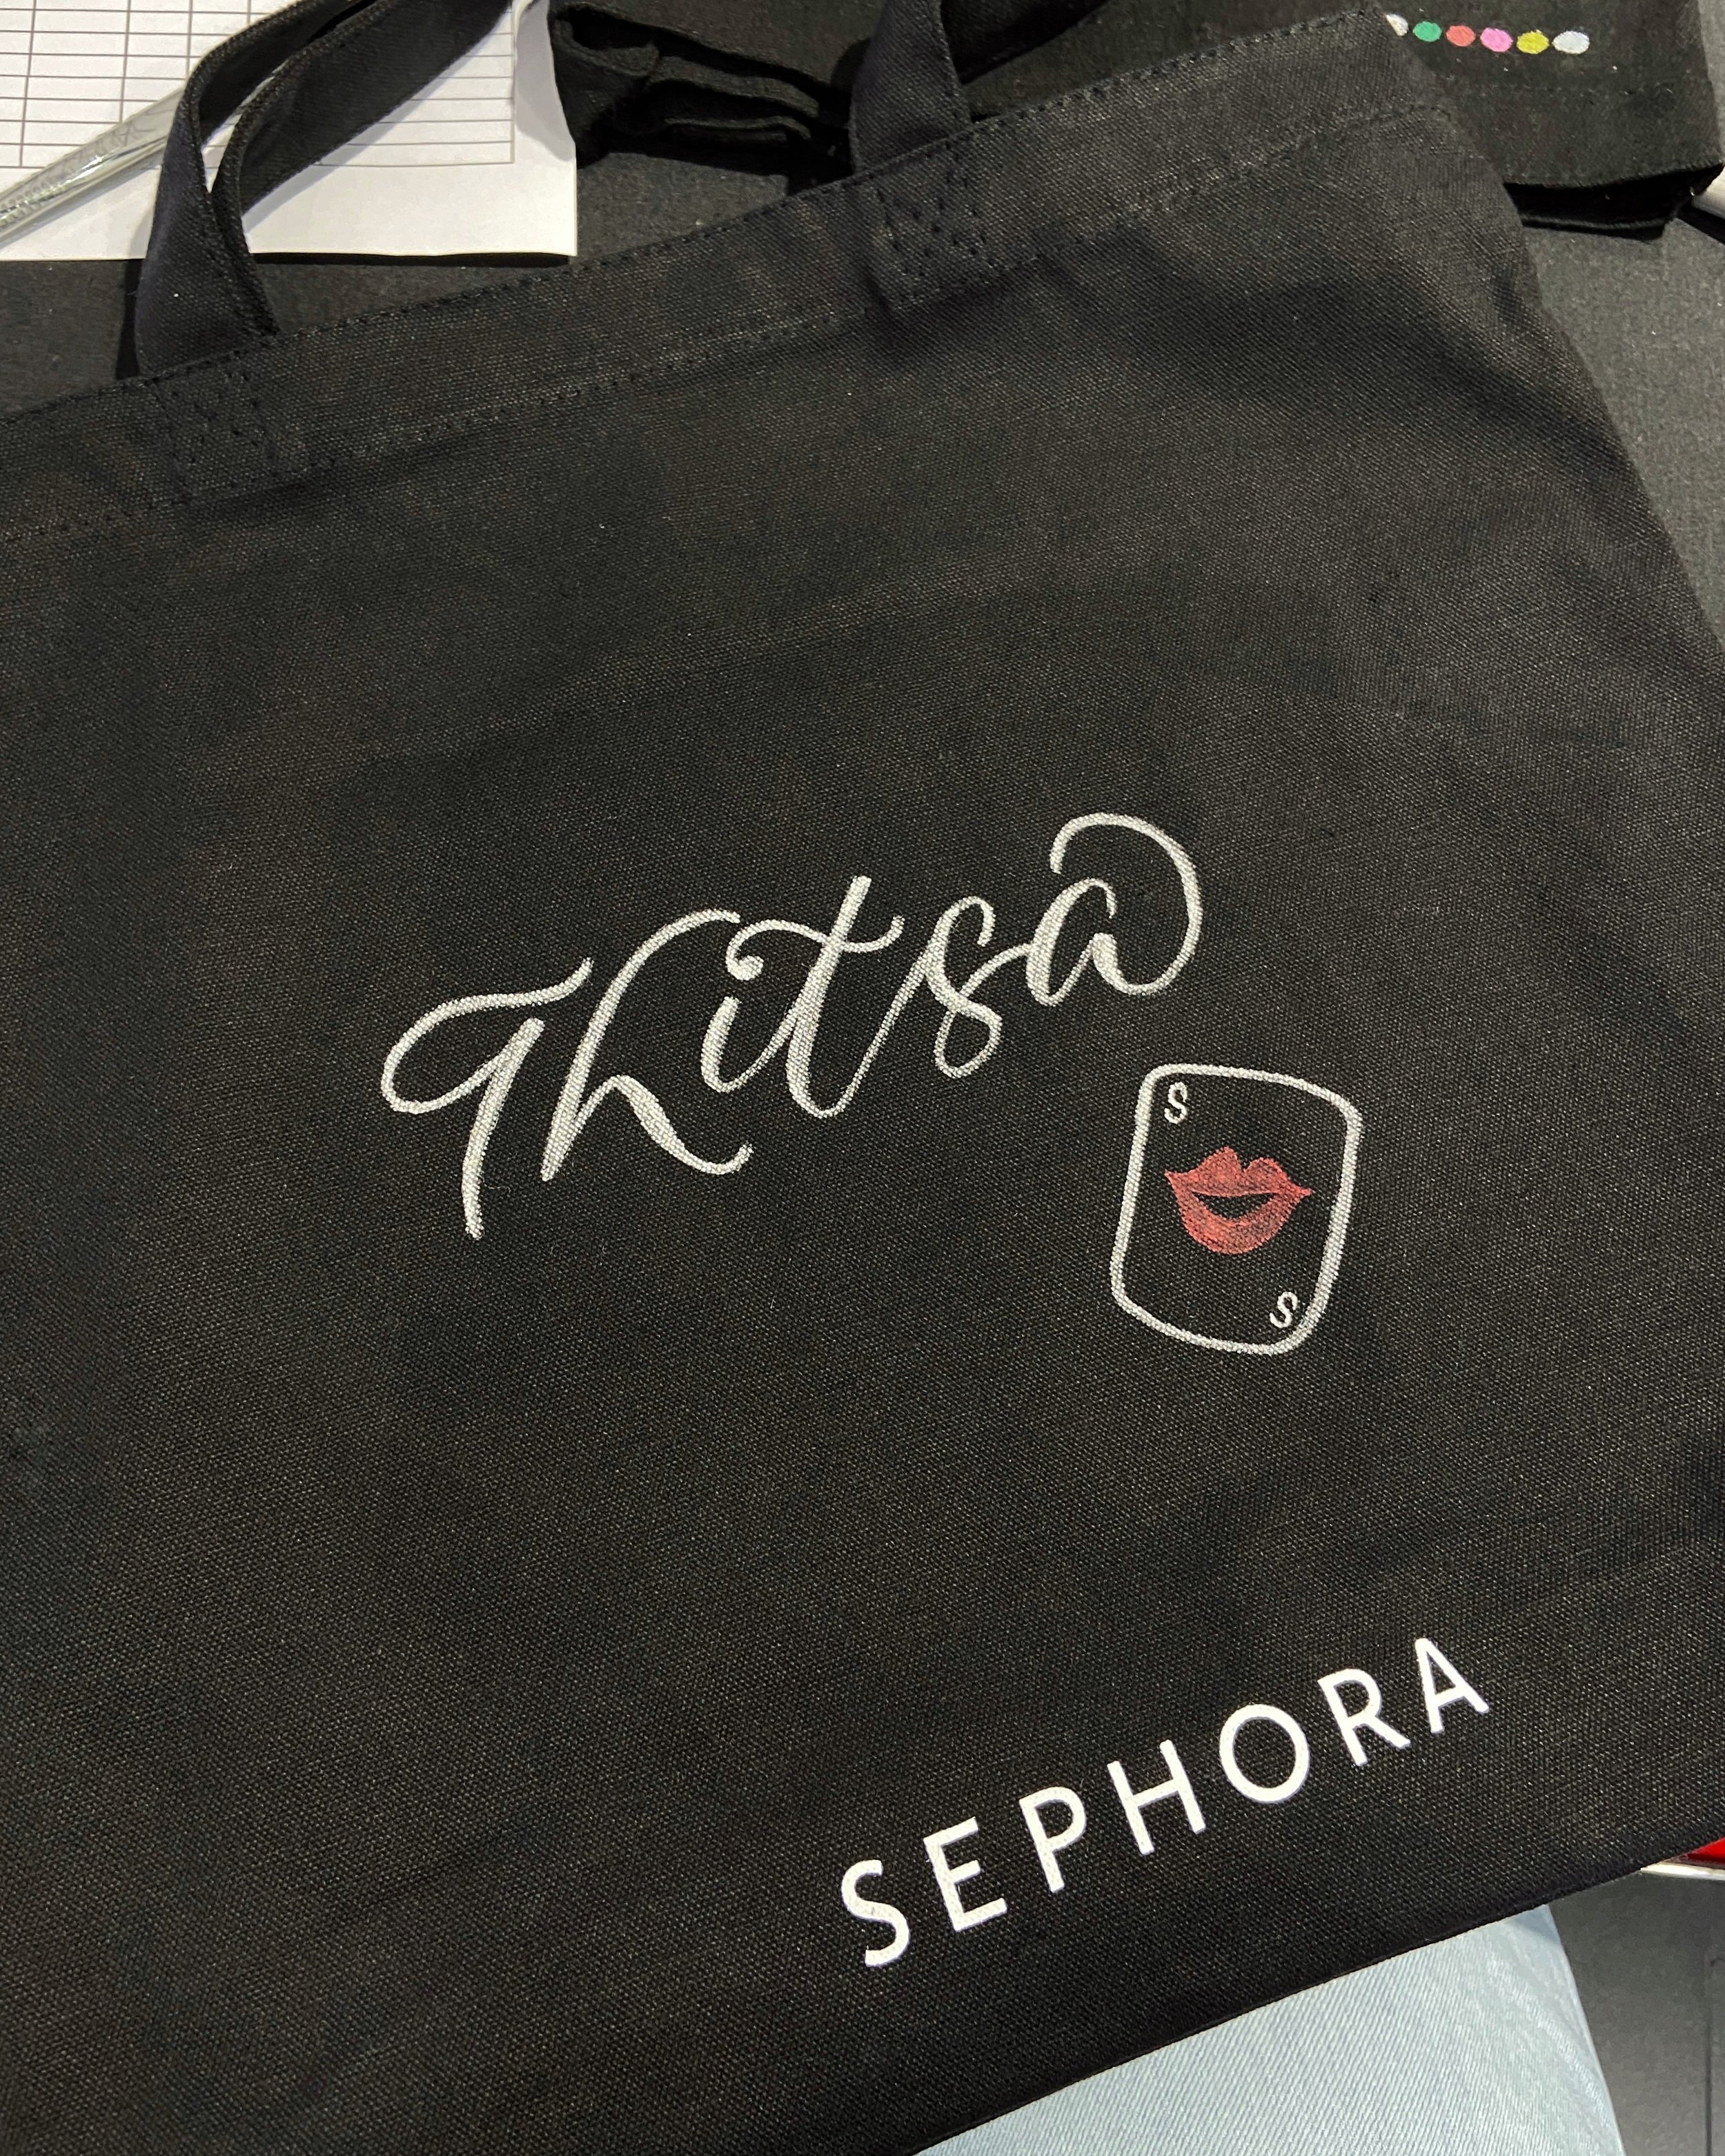 Sephora MBS Live Lettering & Illustration on Tote Bag 14.jpg